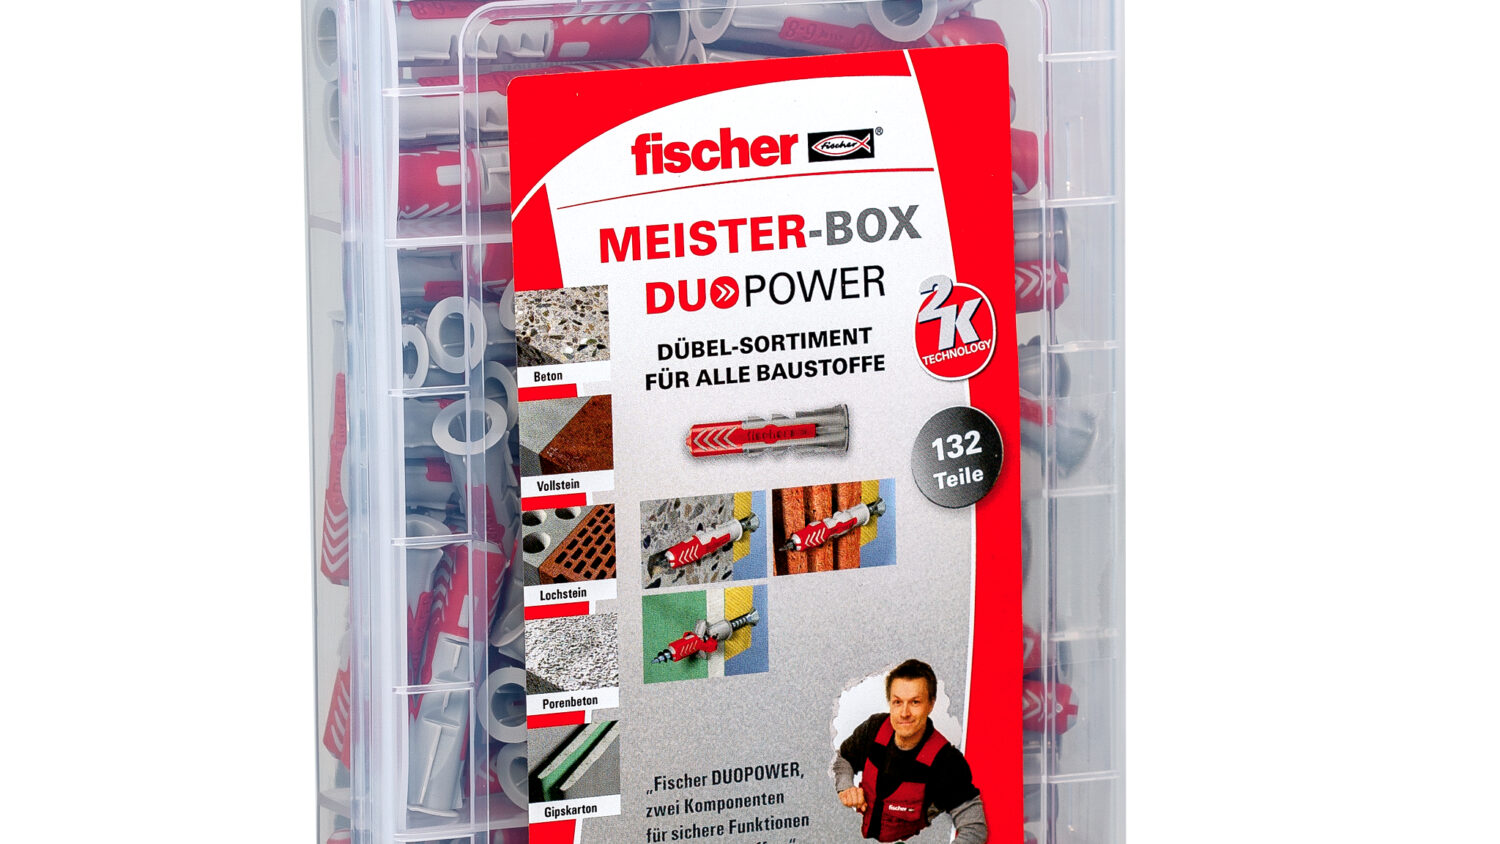 Die fischer Meister-Box DuoPower enthält vorsortiert 60 DuoPower 6 x 30, 60 DuoPower 8 x 40 sowie 12 DuoPower 10 x 50. Die aus hochwertigem